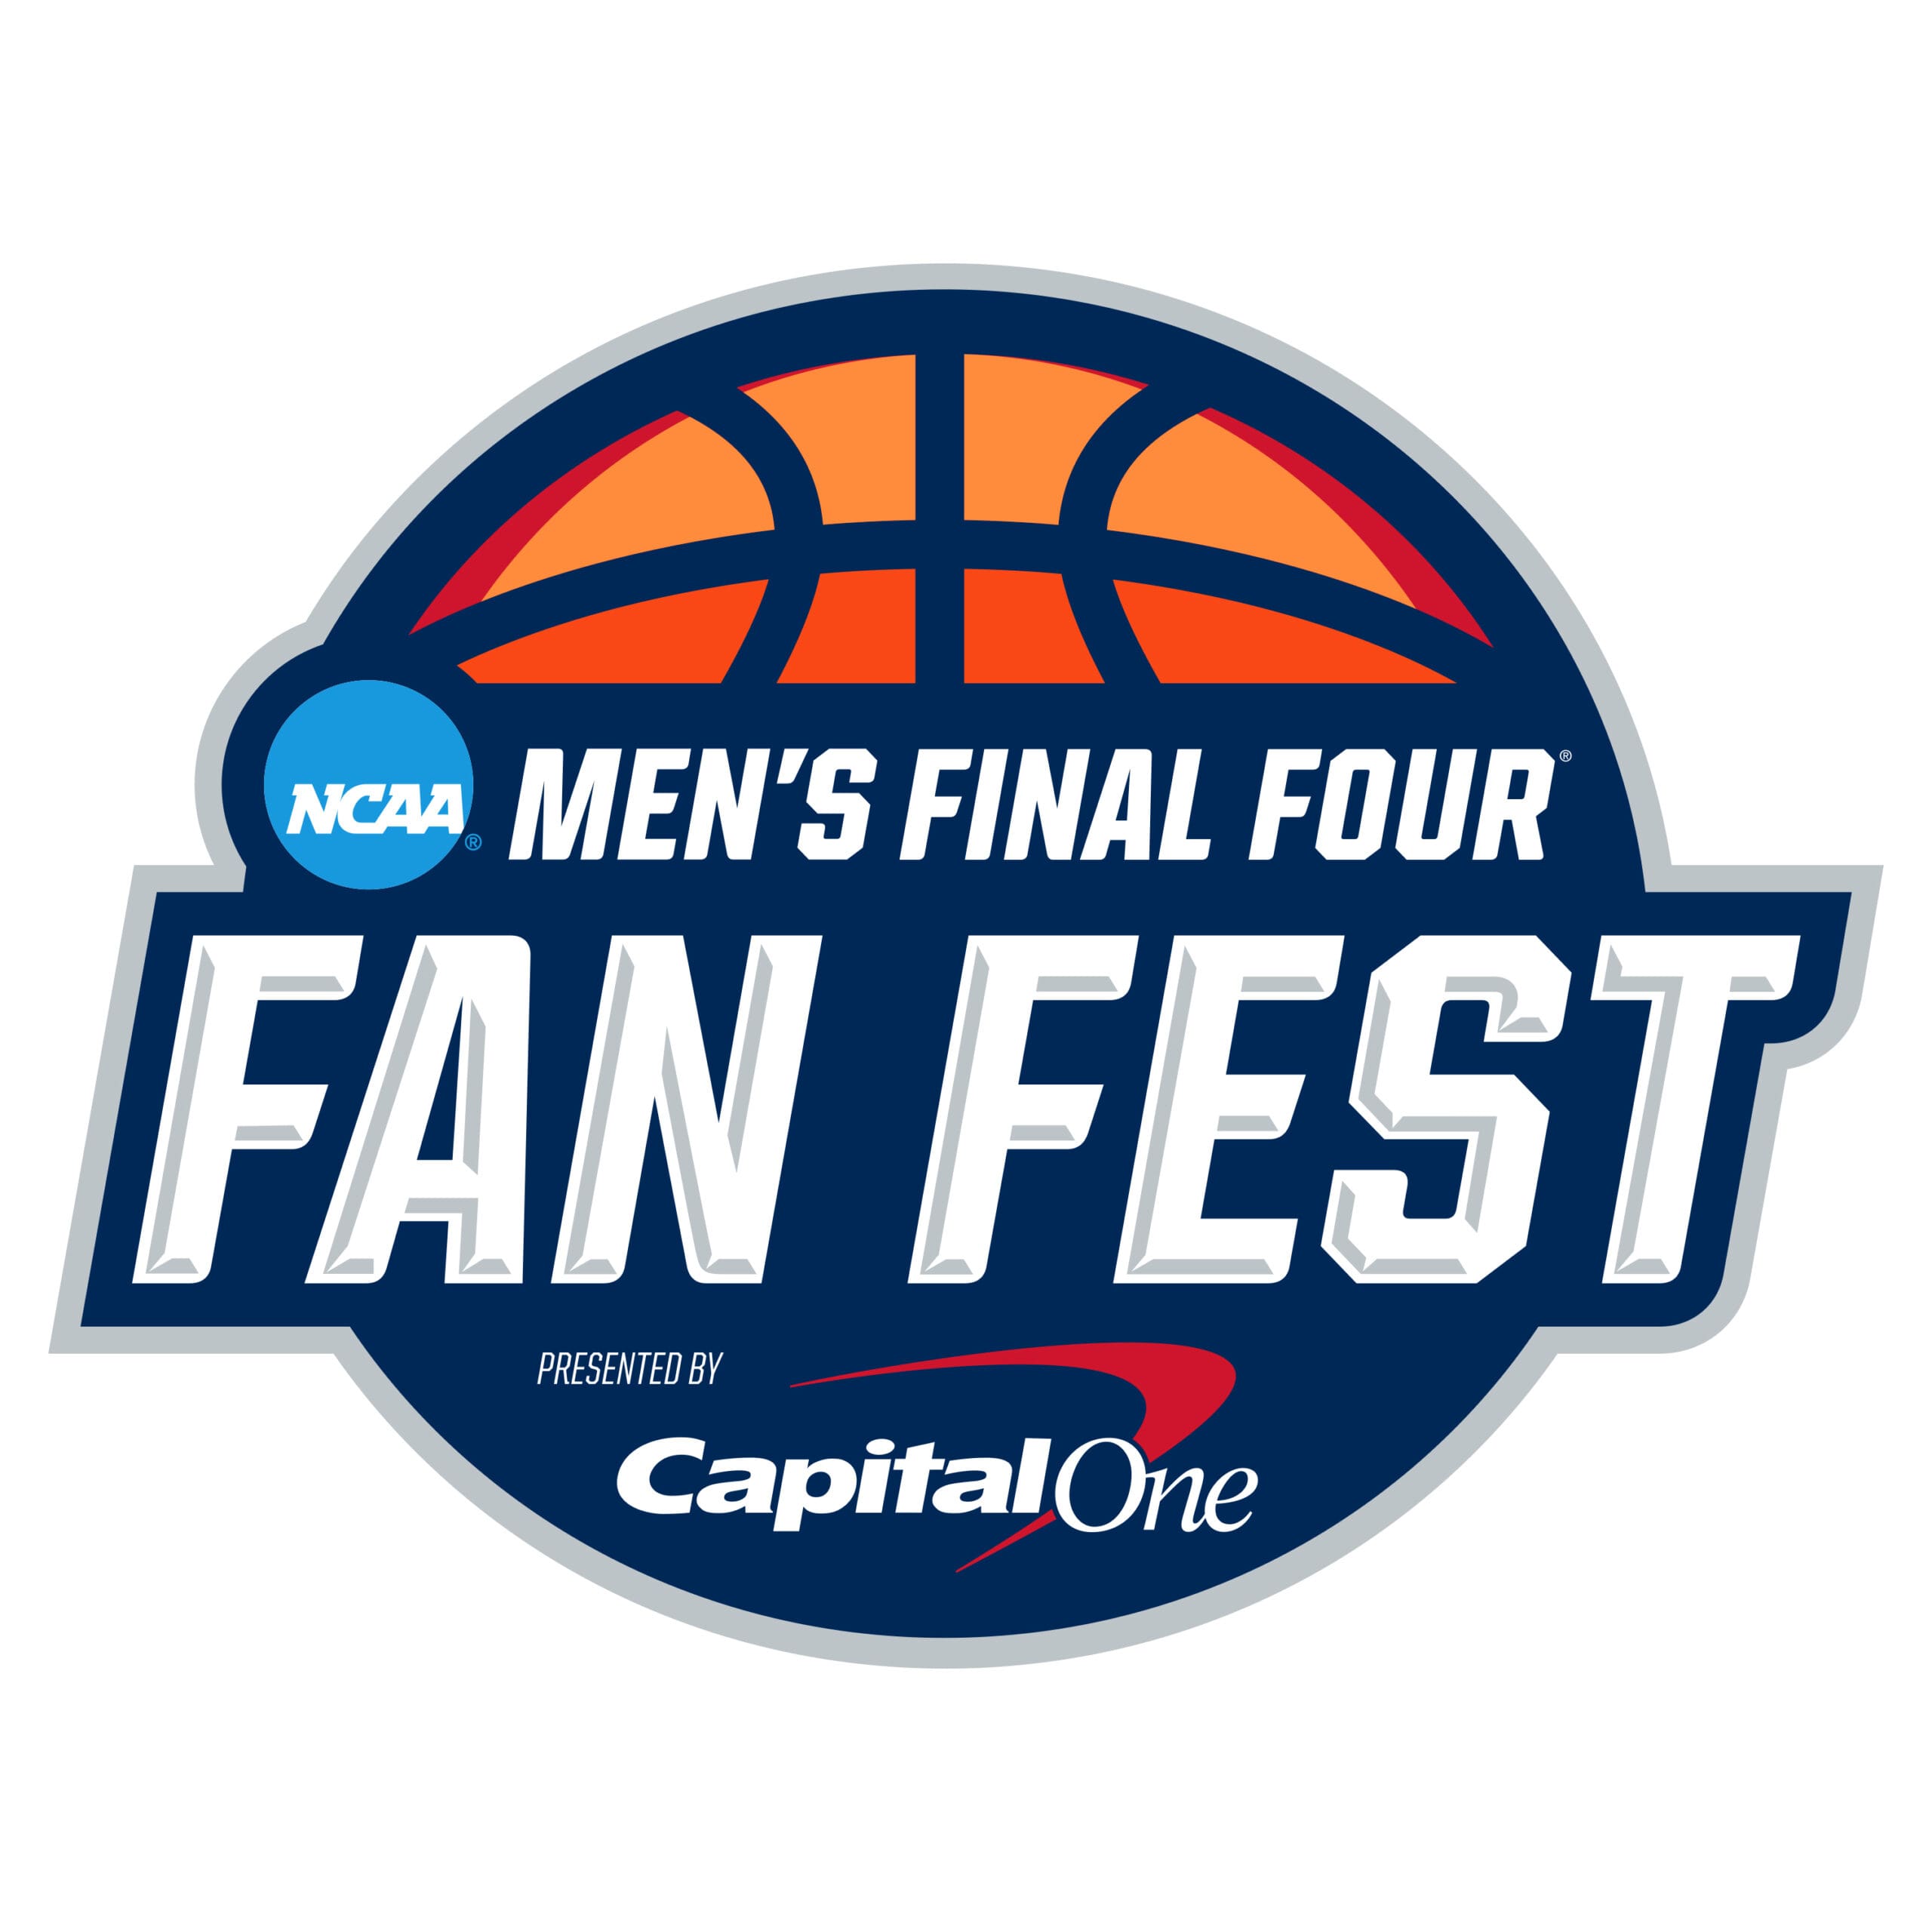 Men's Final Four Fan Fest® Presented by Capital One